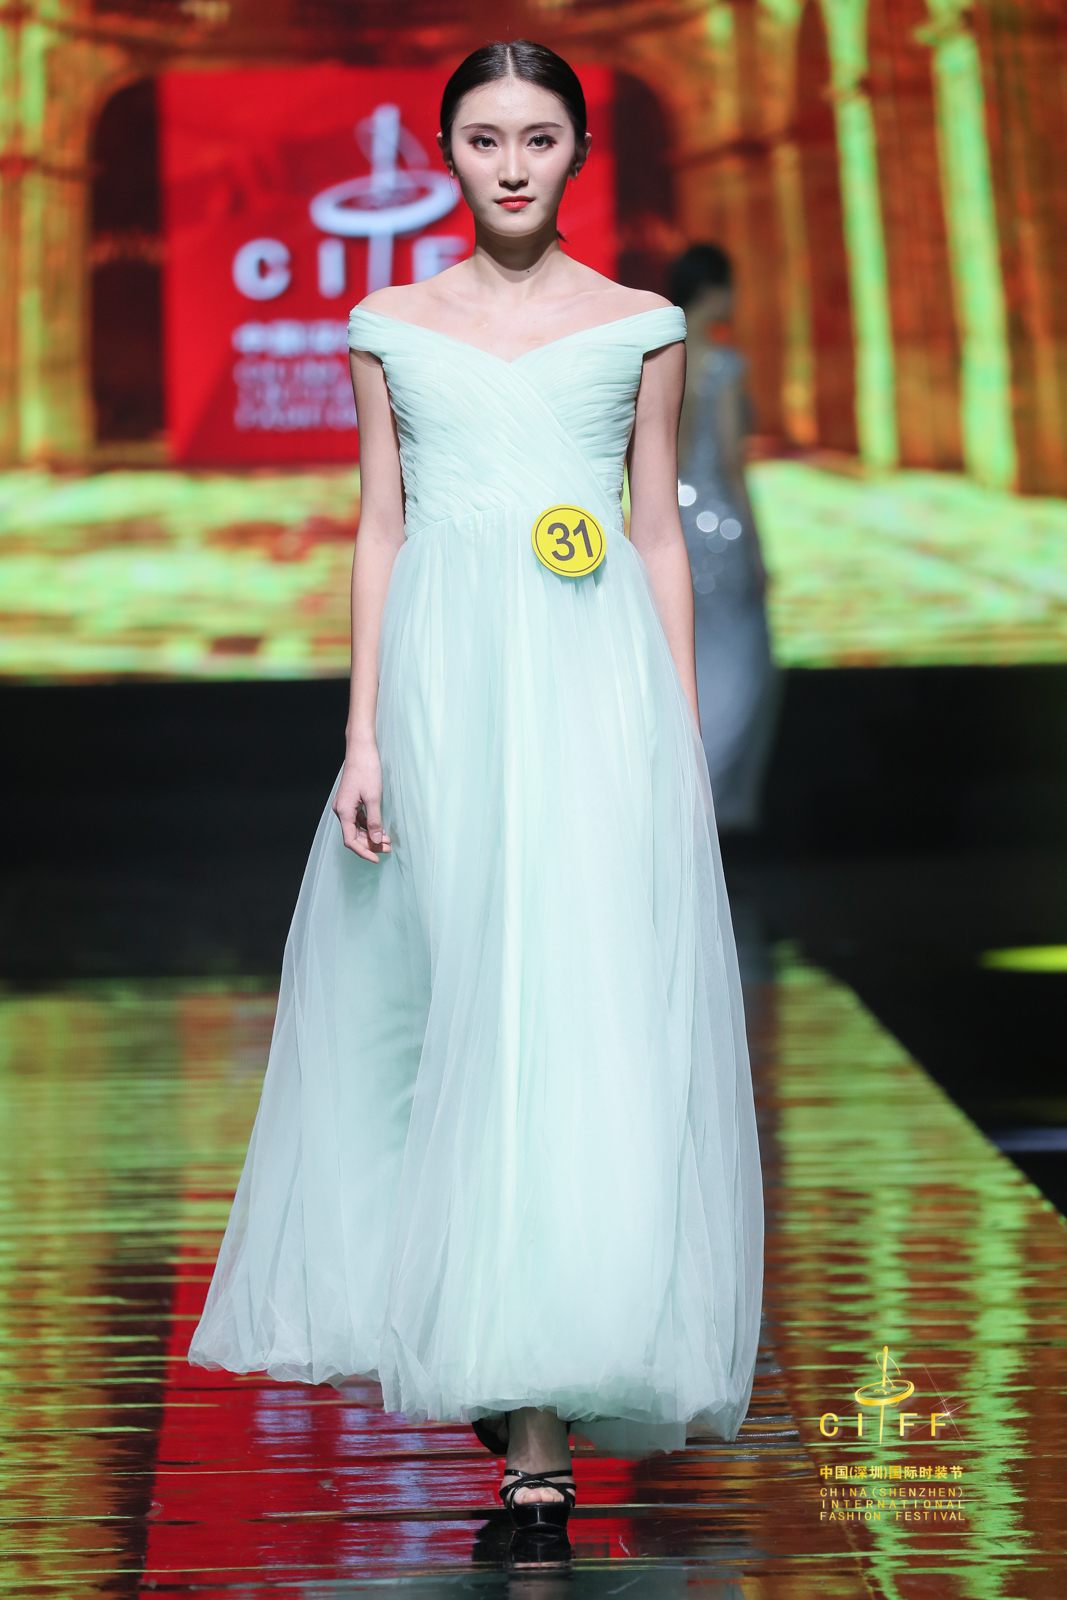 中国大学生模特第一赛事第三届中国大学生服装模特大赛在深圳举行获奖